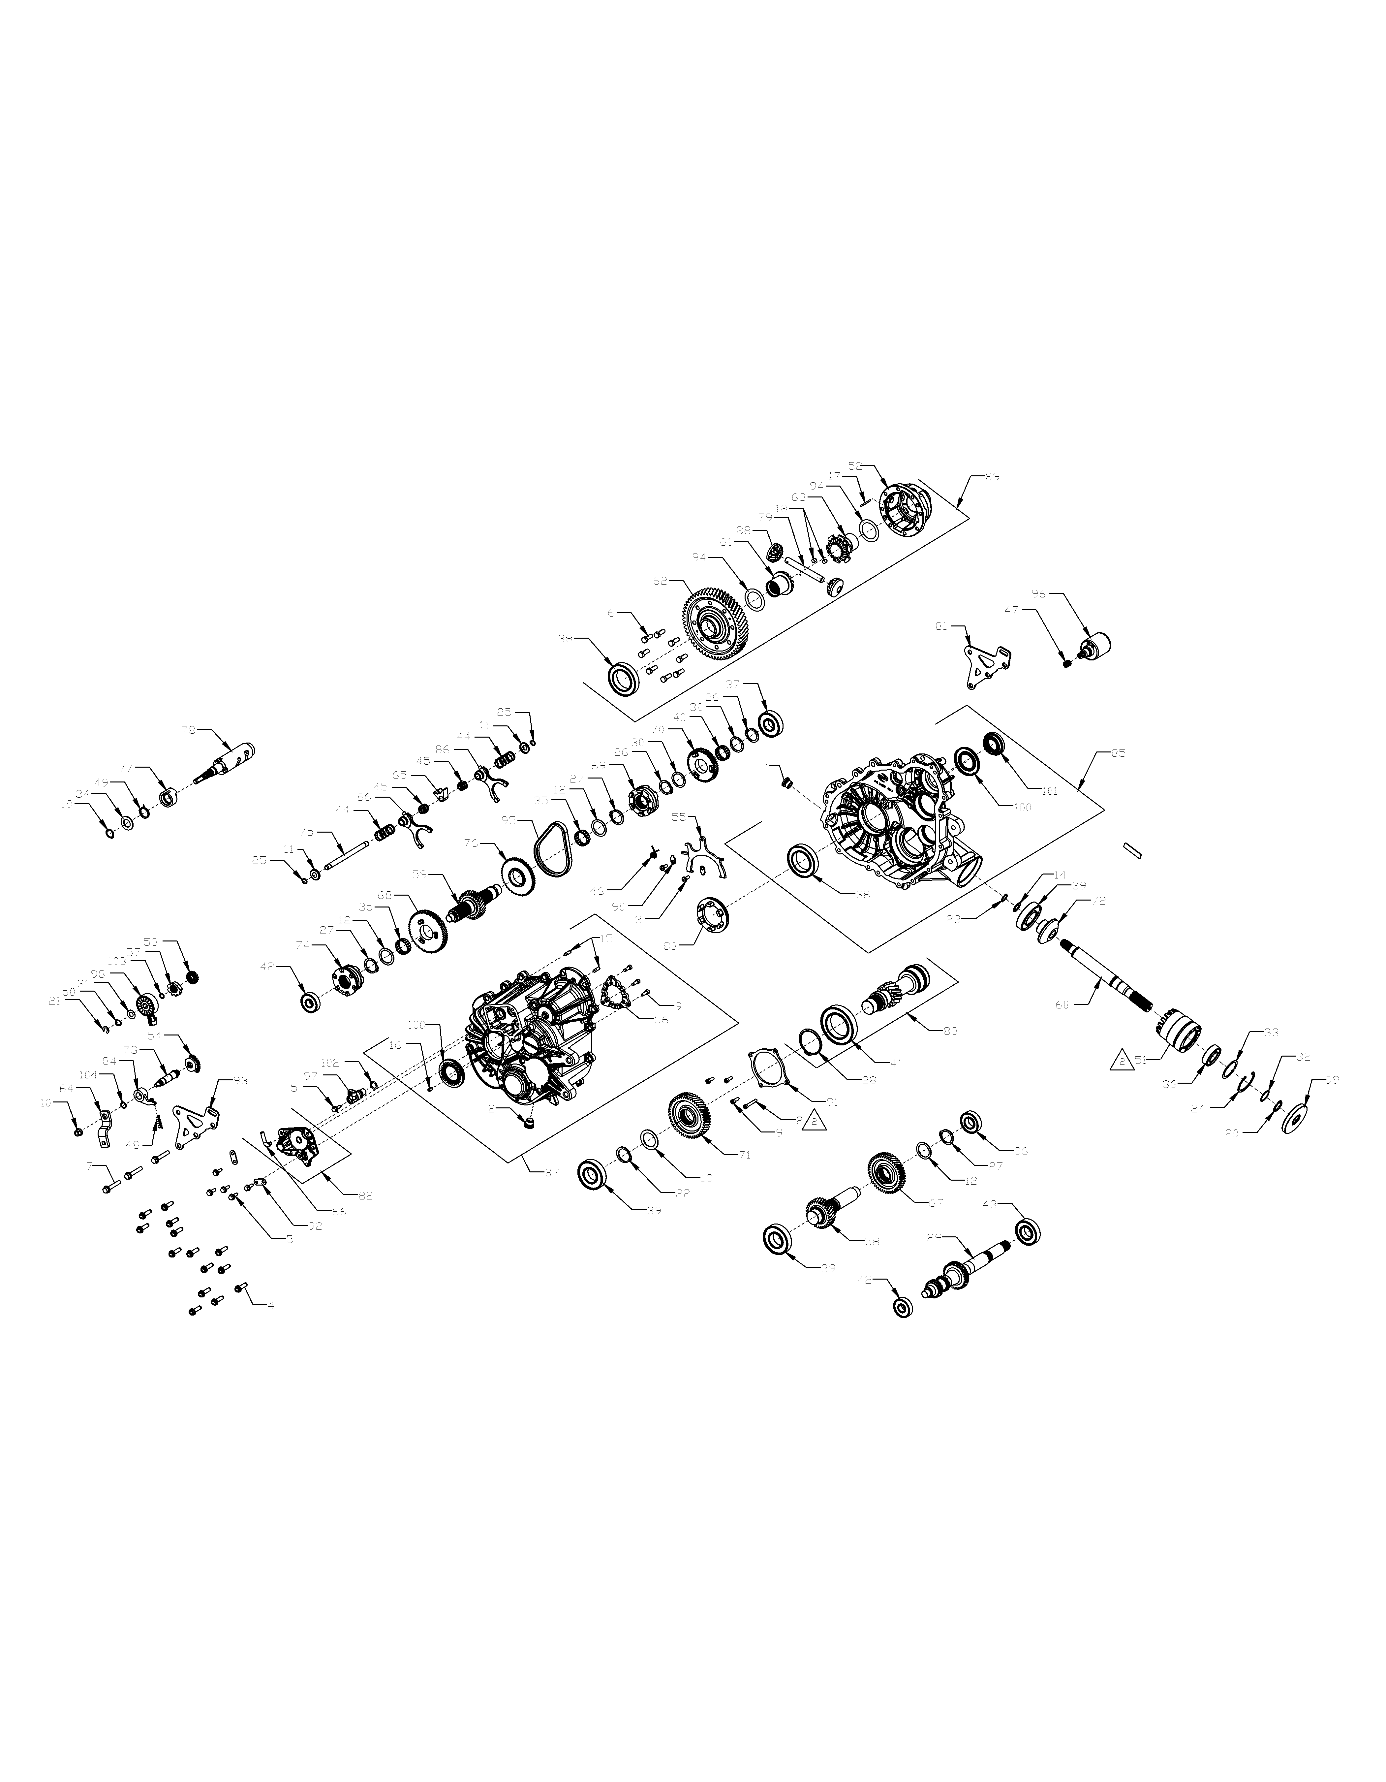 Foto diagrama Polaris que contem a peça 3236412